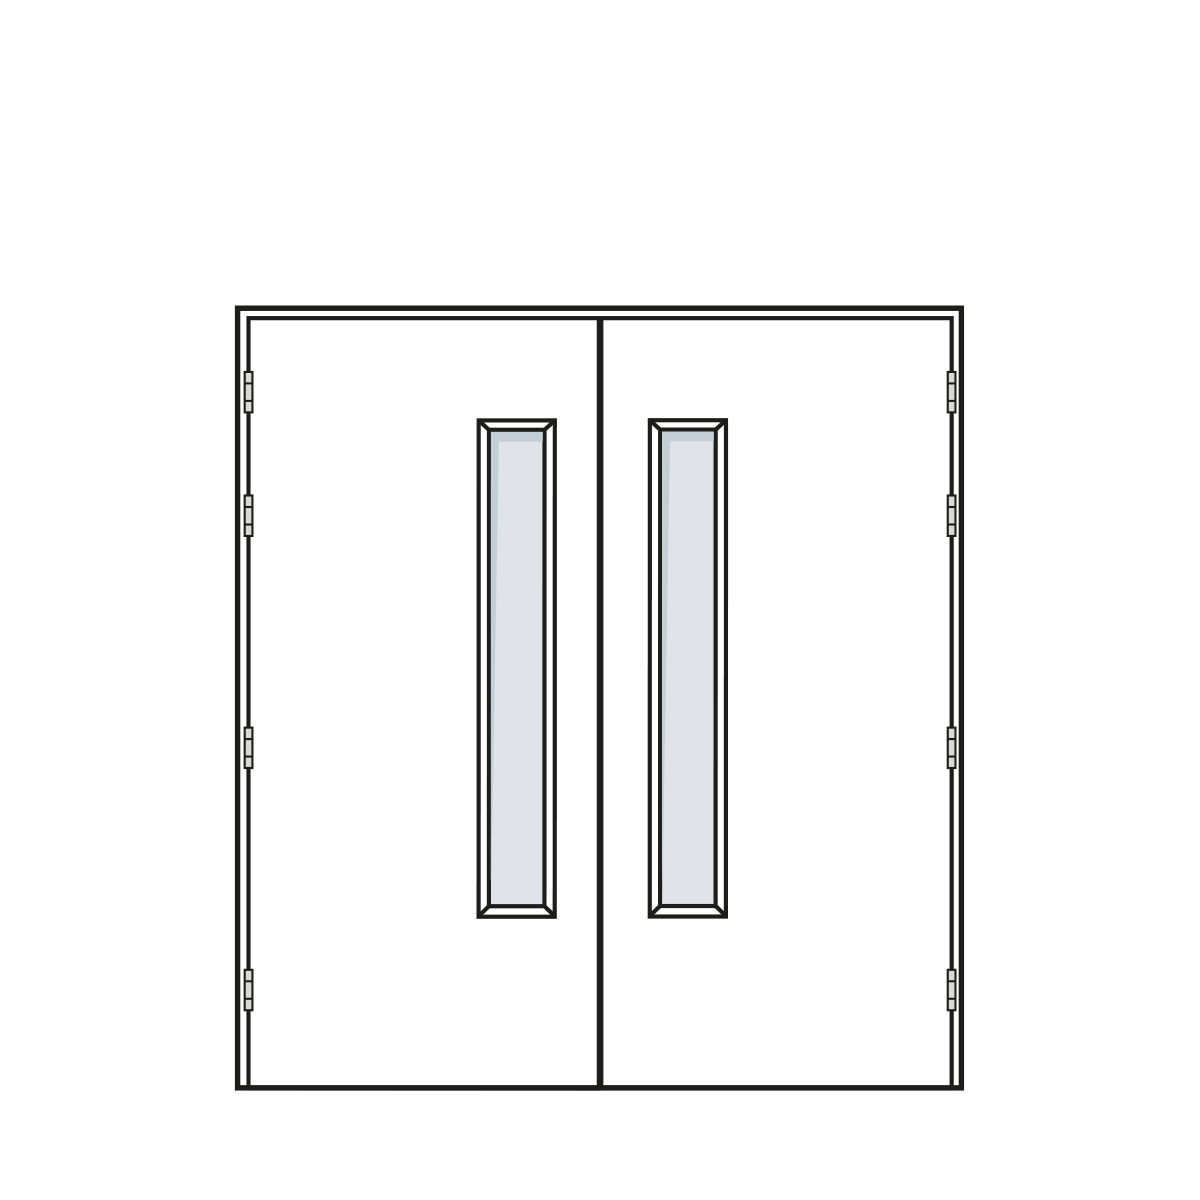 Door Configuration - Equal Pair Doorset with Standard Vision Panel - Code EP-VP01